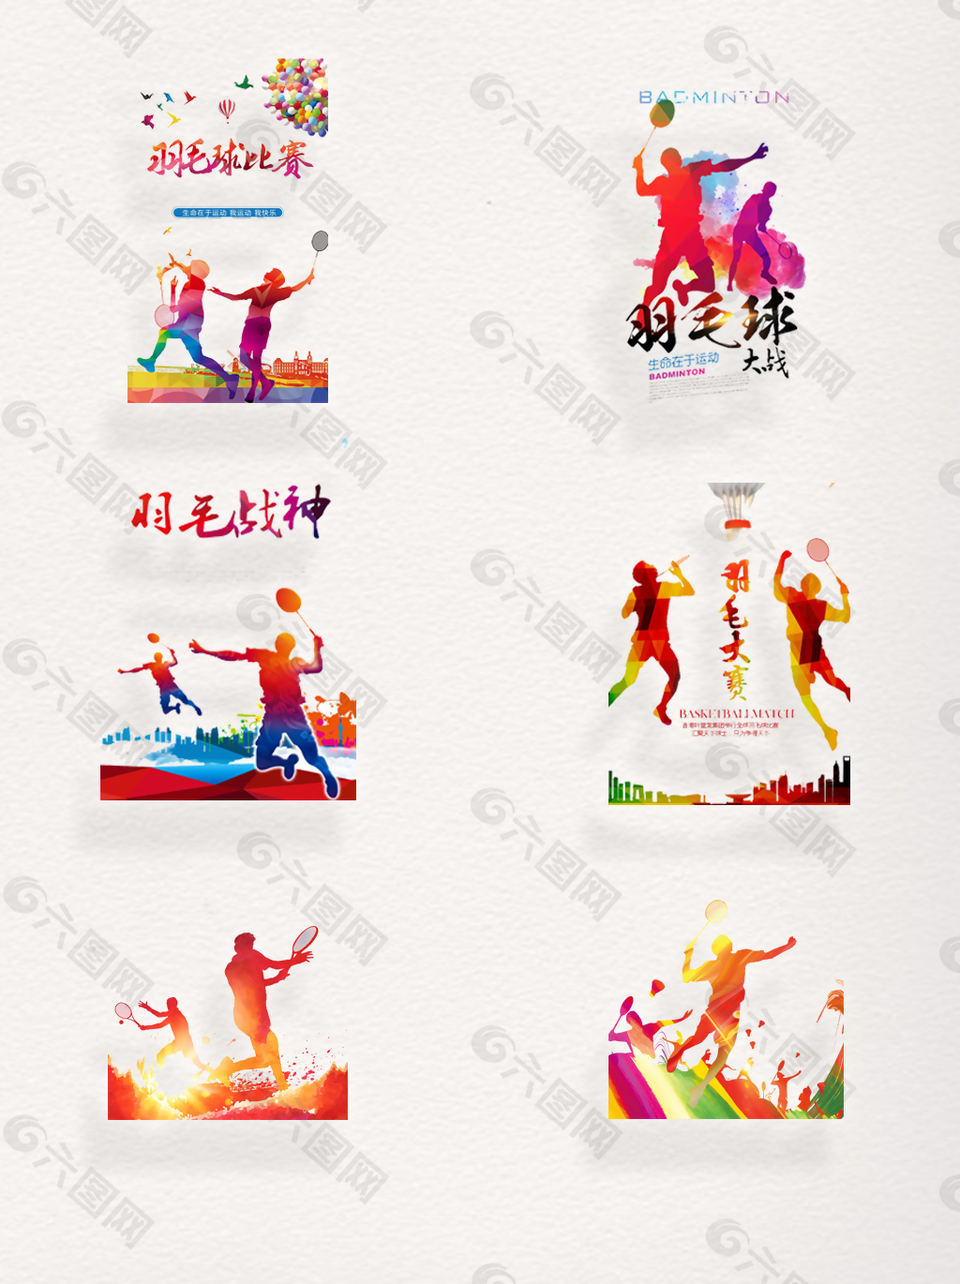 一组彩色羽毛球运动背景设计素材